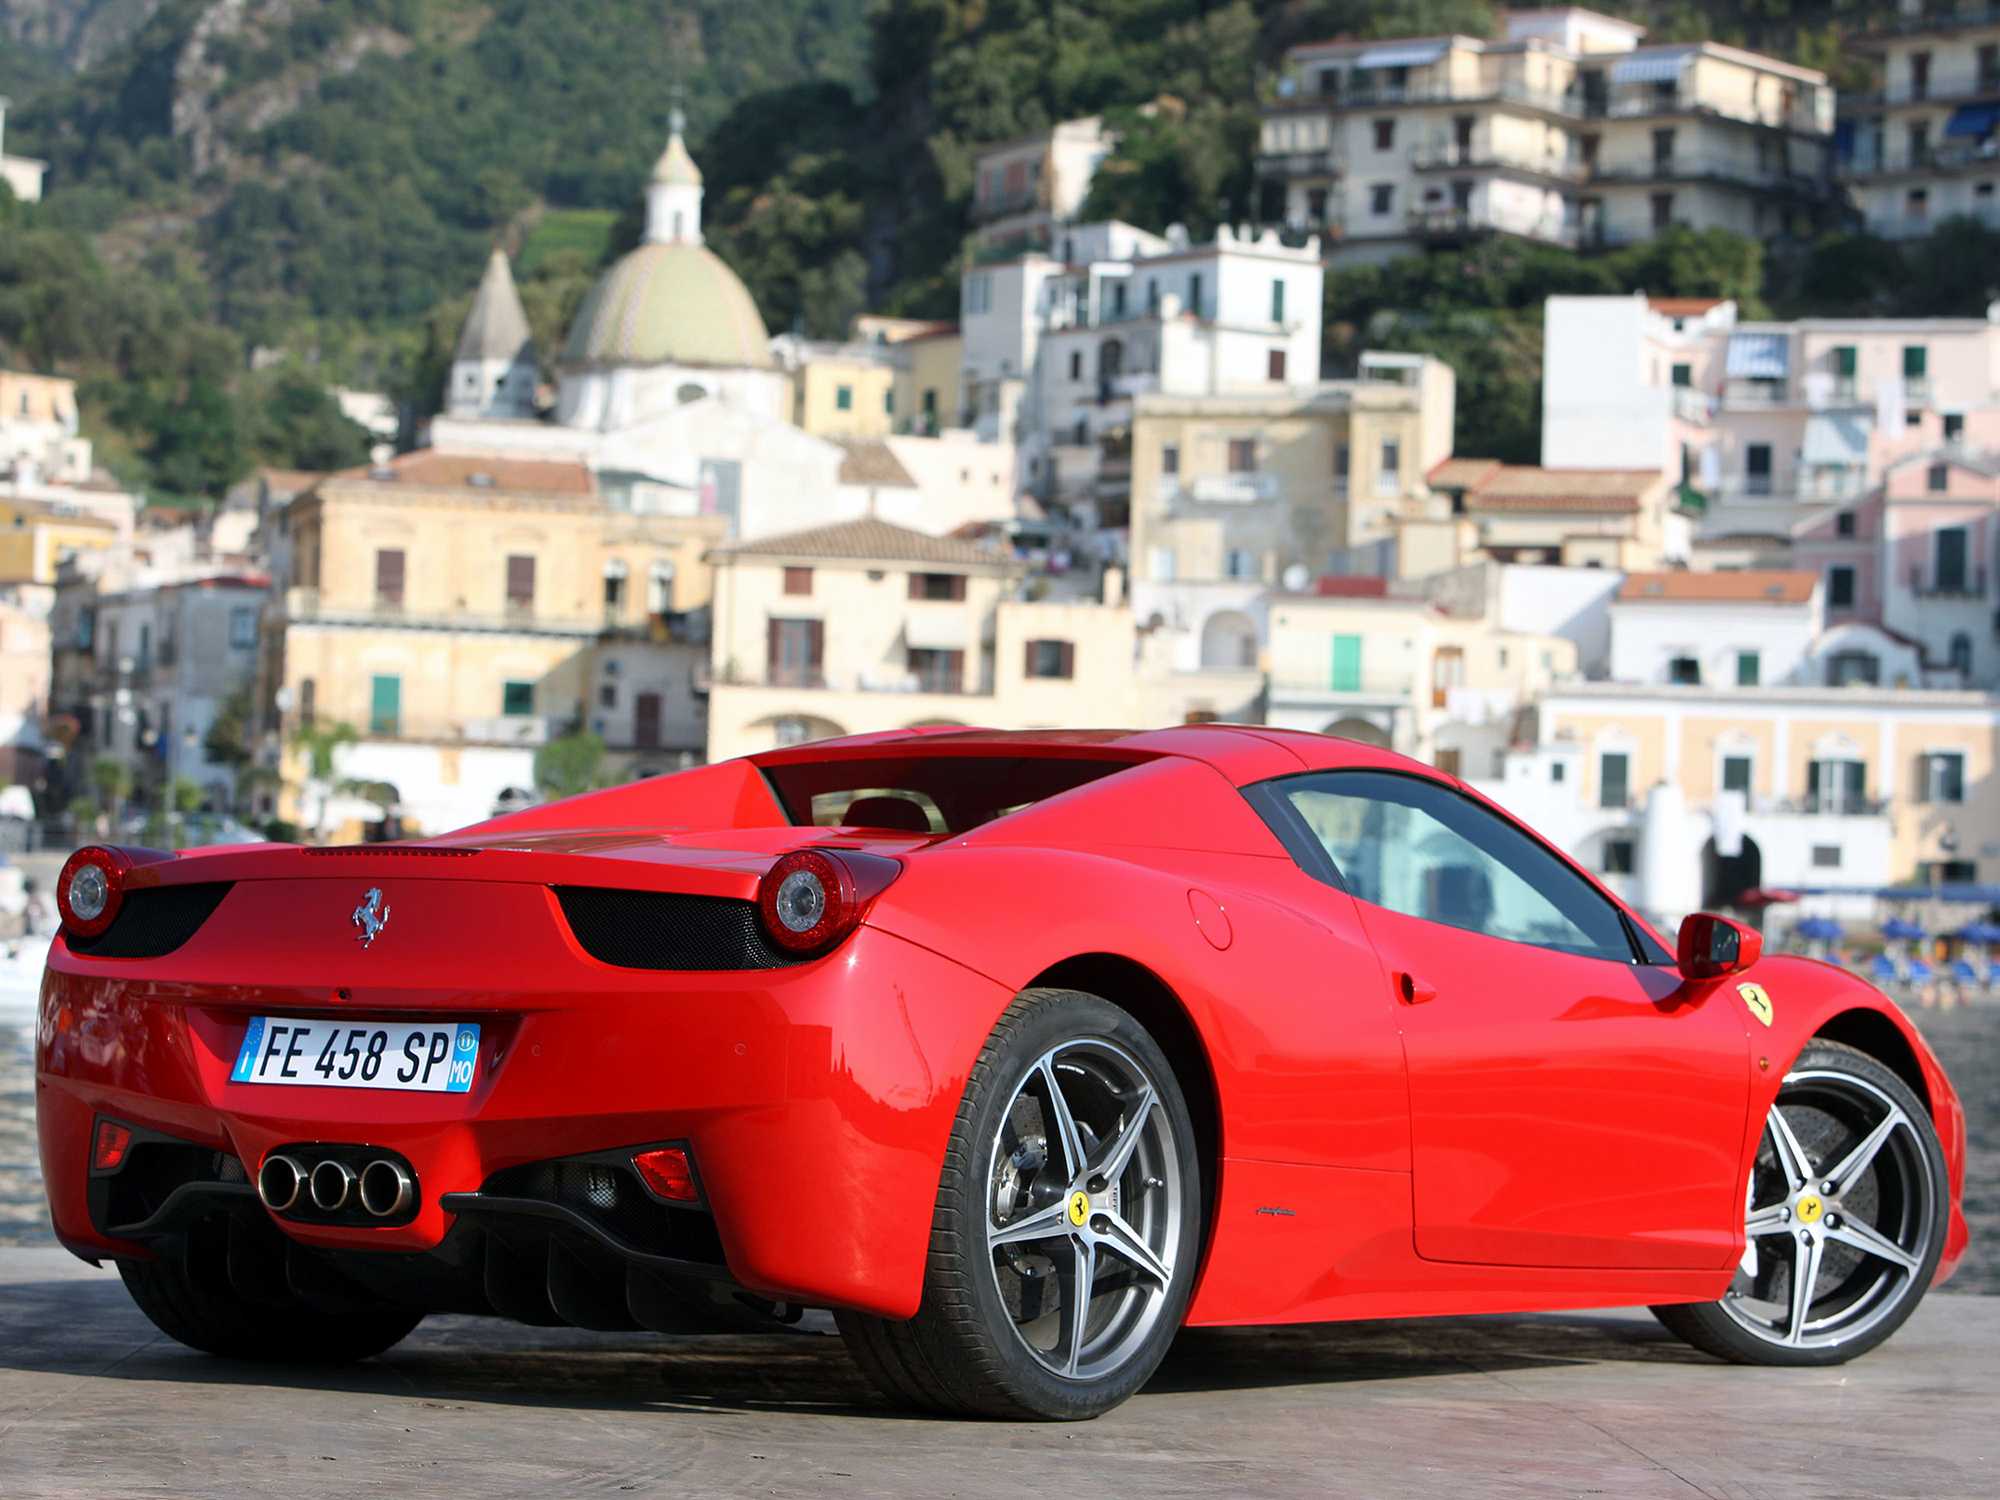 Оснащение и стоимость Ferrari 458 Spider, перечень технических характеристик Обзор кабриолета Феррари 458 Спайдер с фотографиями и видео